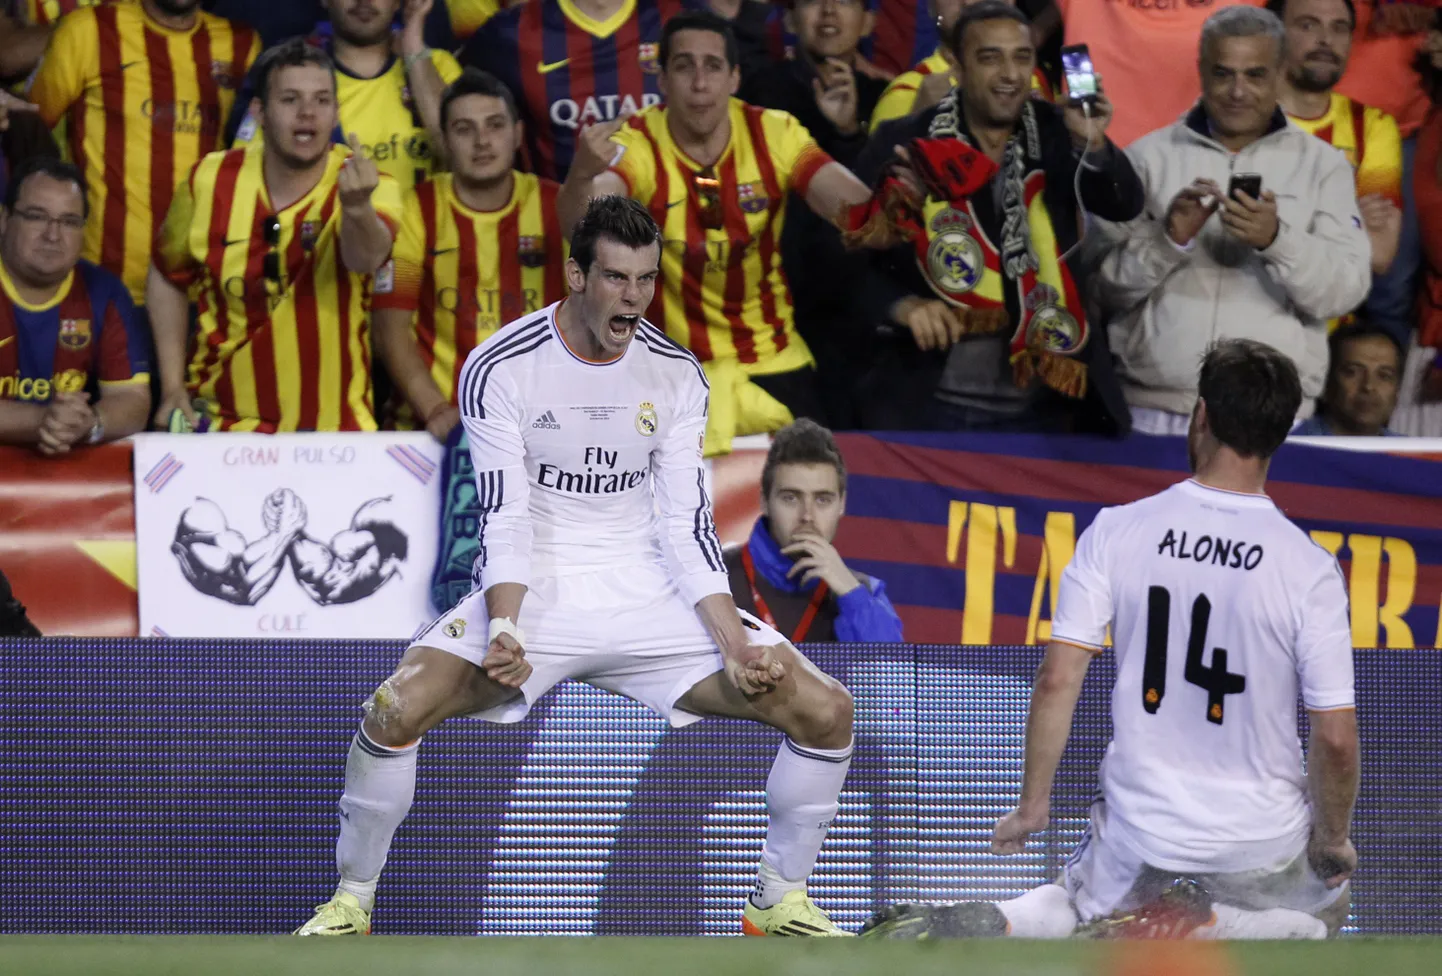 Karikafinaalis võiduvärava löönud Gareth Bale tähistab Barcelona fännide ees, kels demonstreerivad ilmekalt oma arvamust.